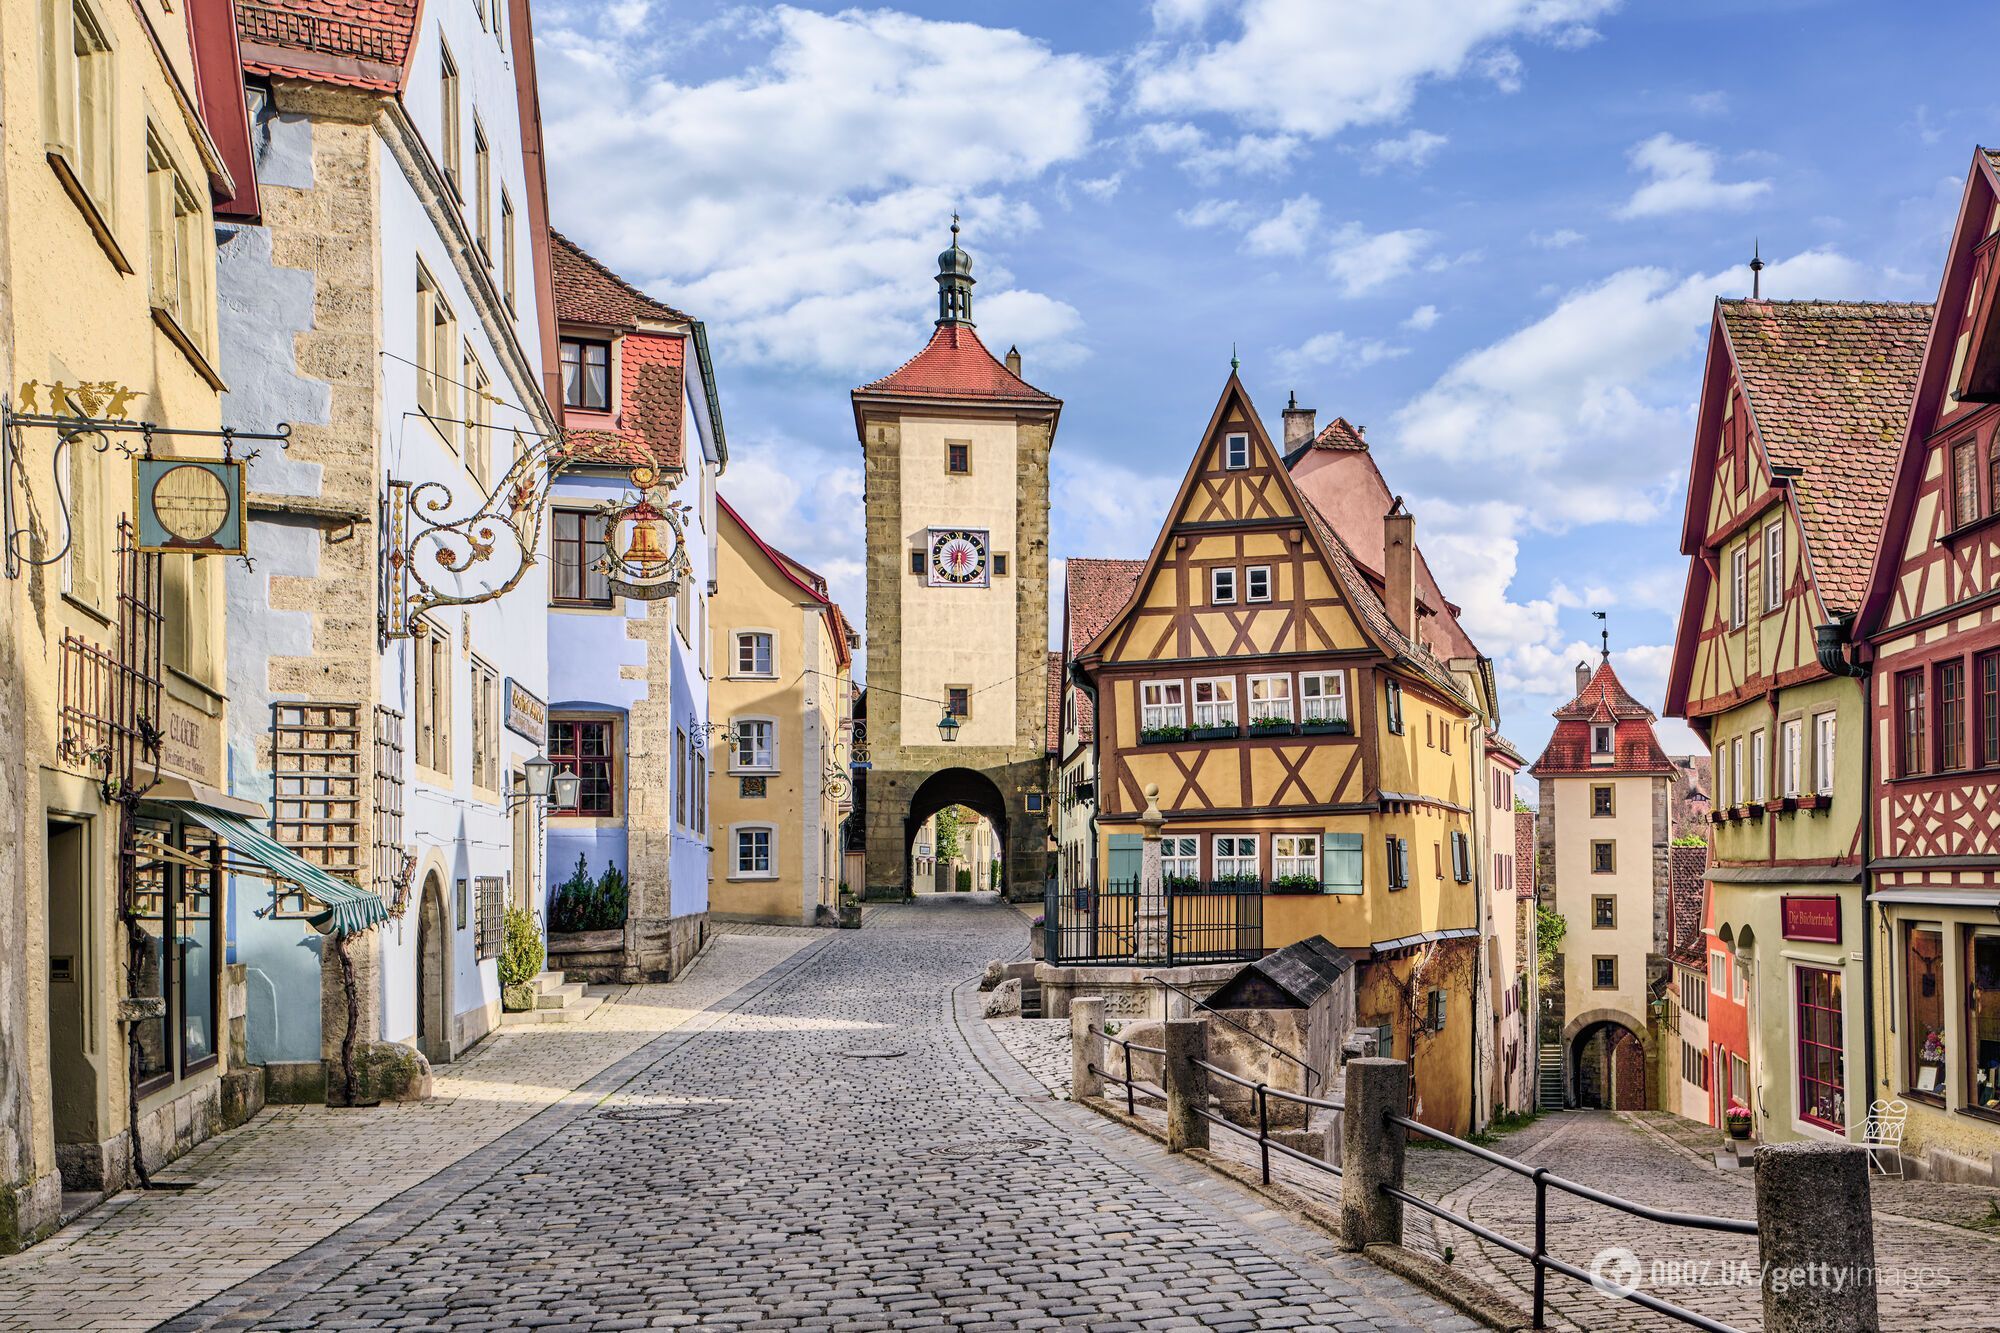 "Жива казка": який вигляд має крихітне місто в Європі, що надихнуло класиків Disney. Фото